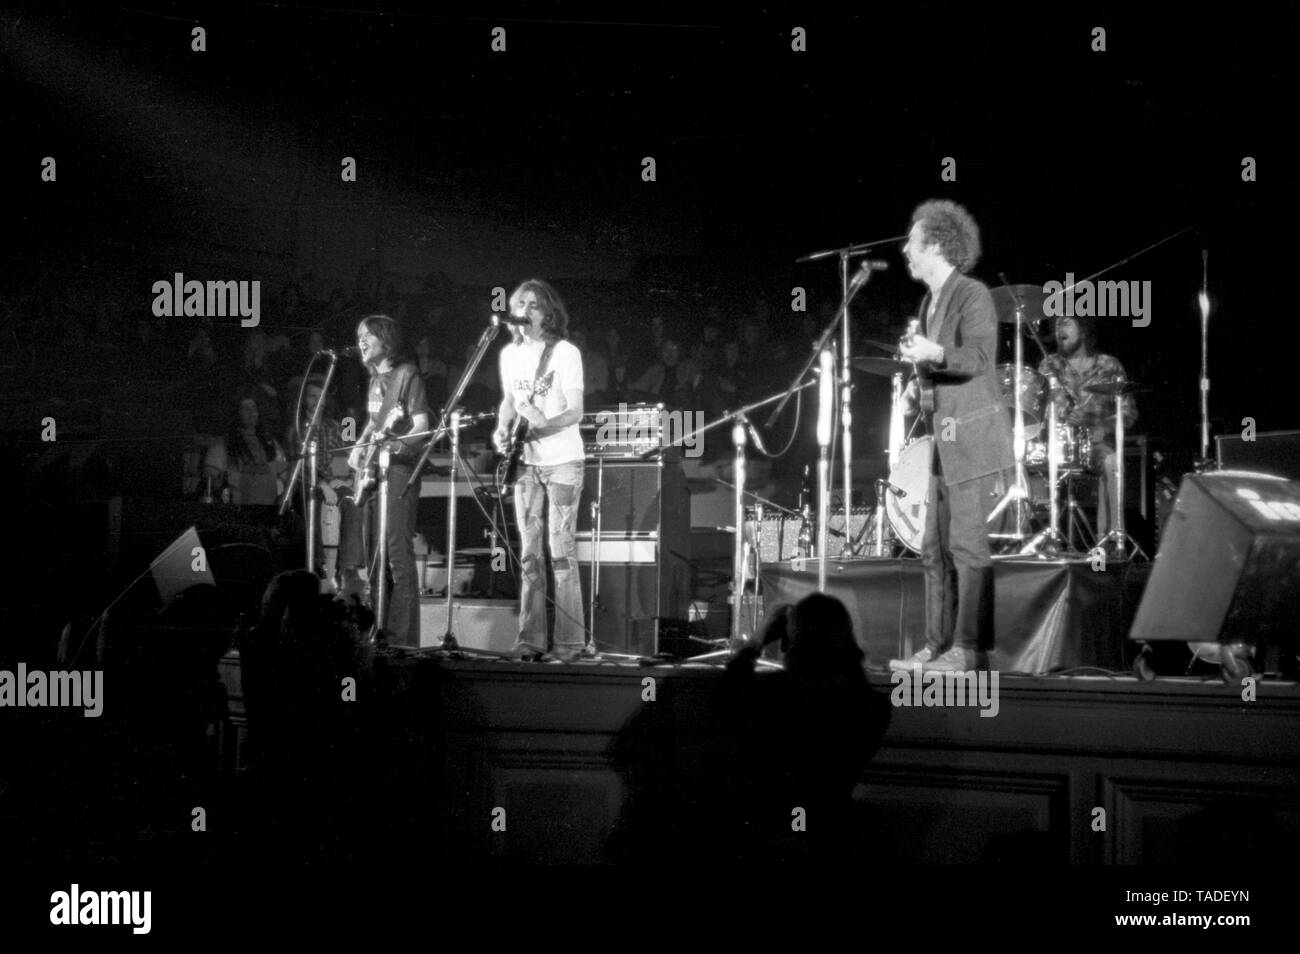 Amsterdam, Niederlande - 1. Januar: Amerikanische Gruppe Adler live auf der Bühne im Concertgebouw Amsterdam, Niederlande im Jahr 1972 durchführen. Nach rechts: Randy Meisner, Glenn Frey und Bernie Leadon Links. (Foto Gijsbert Hanekroot) Stockfoto